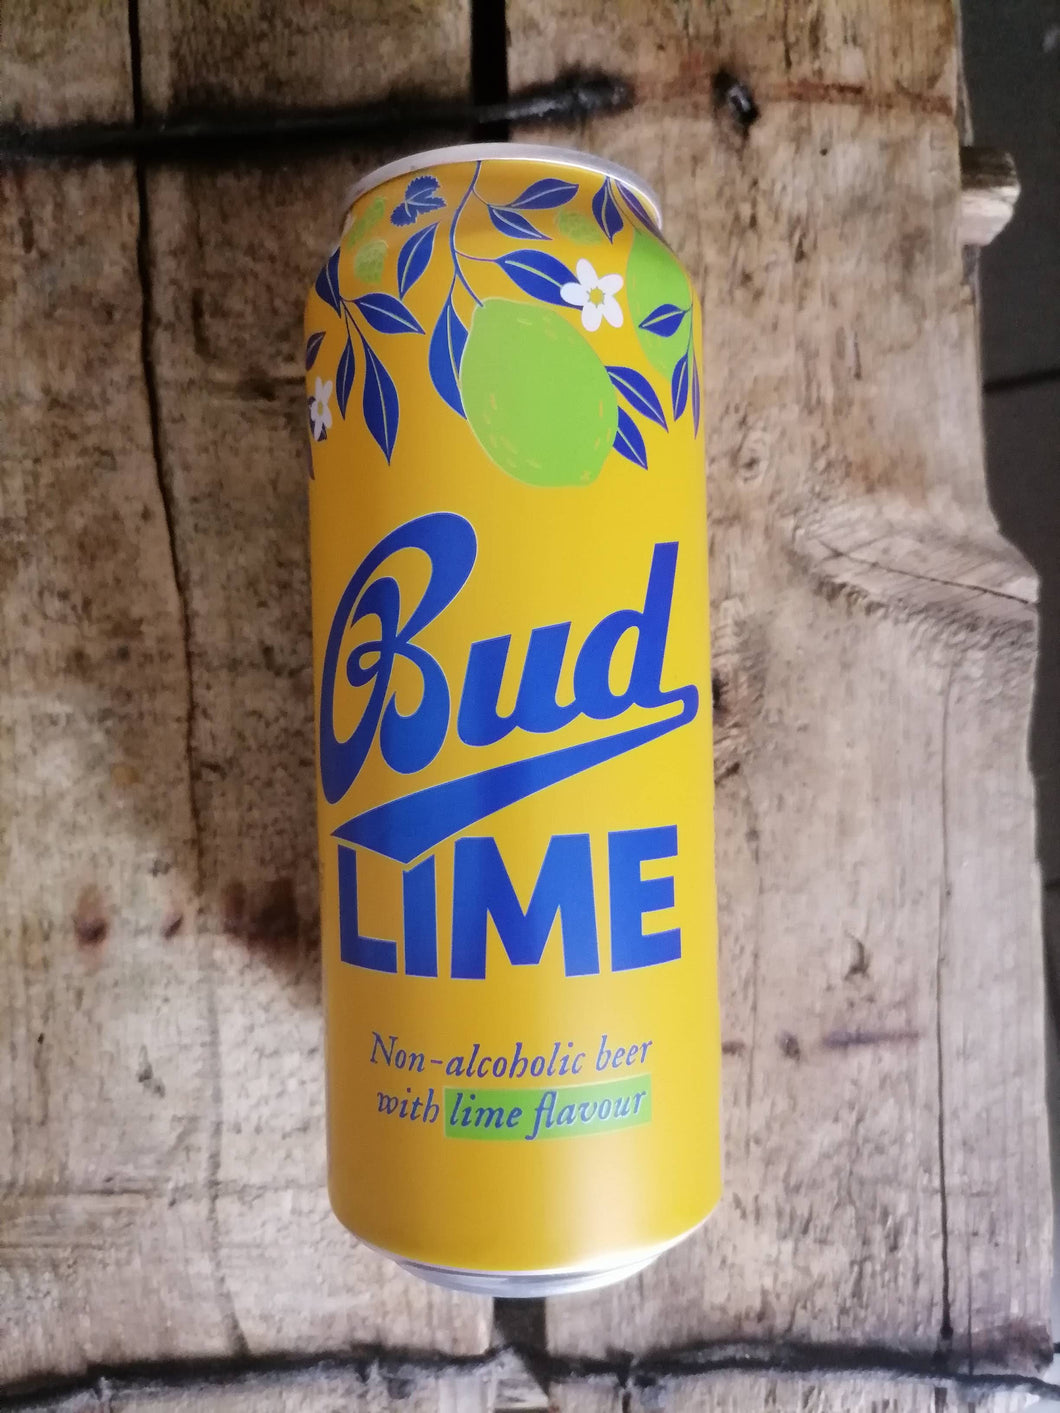 Budvar Bud Lime 0.3% (500ml can)